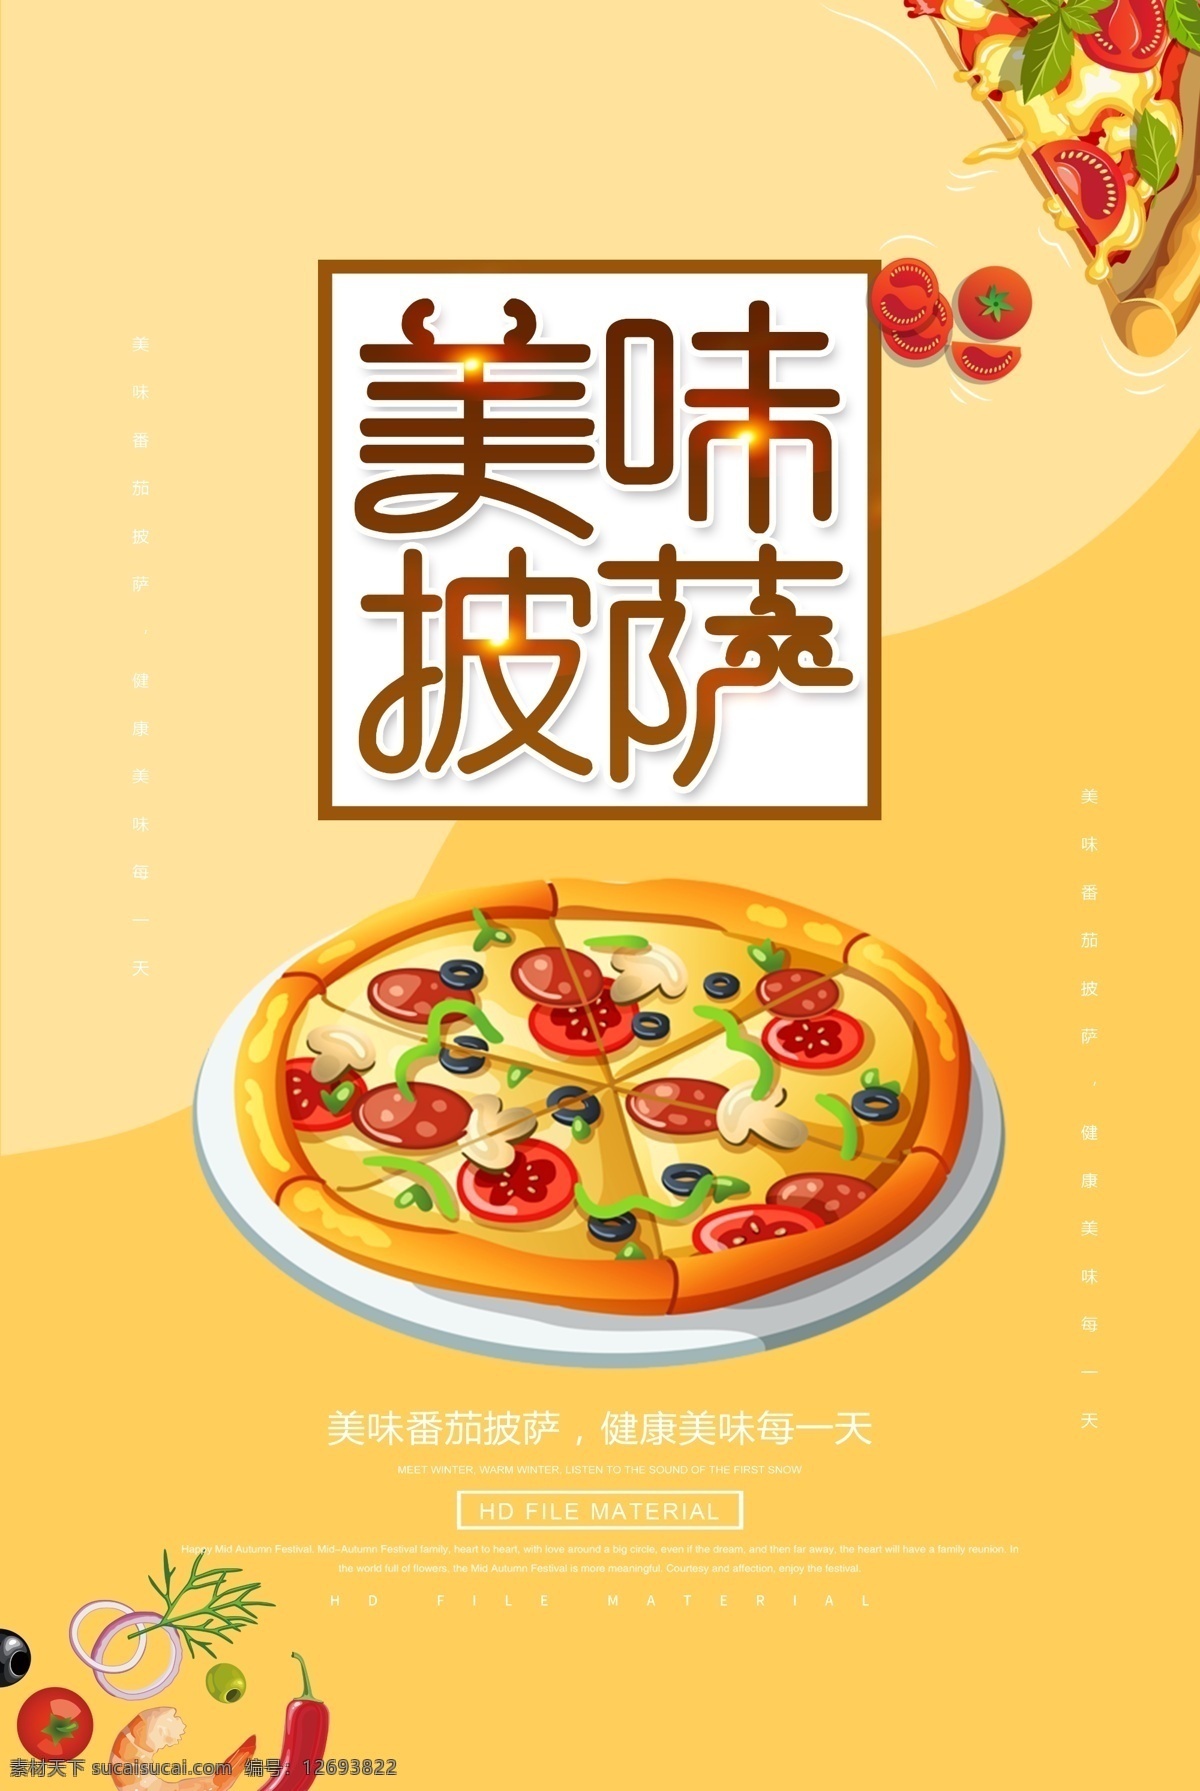 西式 美食 披萨 宣传海报 西式美食 披萨宣传海报 外国食品 番茄披萨 披萨美食海报 美味披萨 西餐 主食